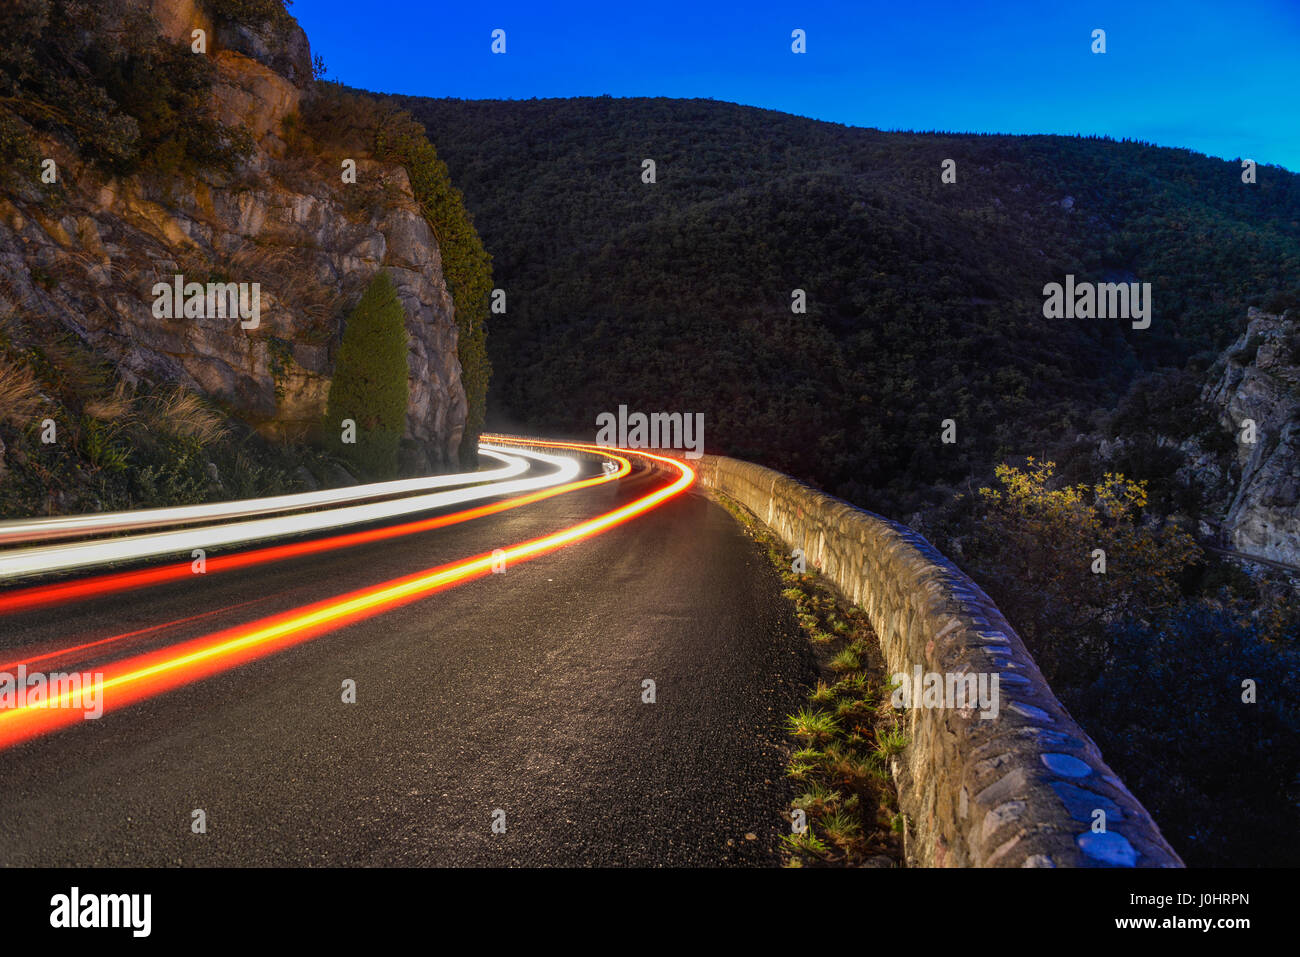 Leuchtspuren von eine Belichtungszeit von Autolichter in der Nacht, eine Kurve auf einer Bergstraße Rundung. Stockfoto